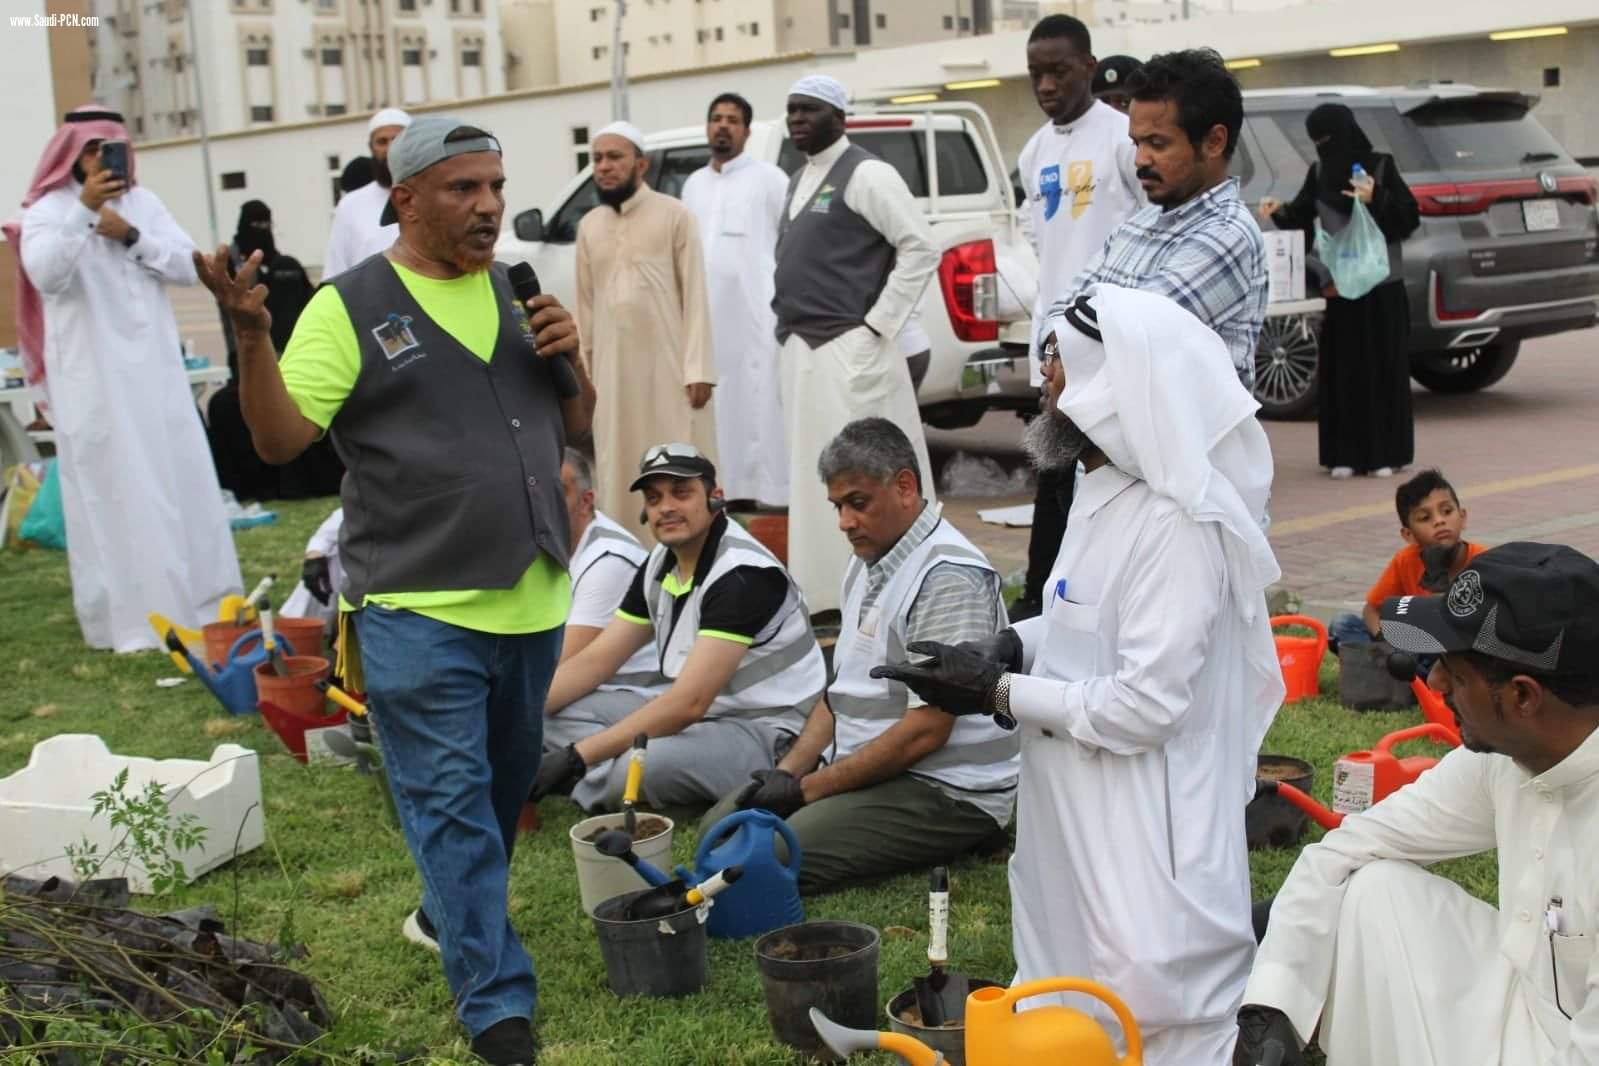 برعاية شبكة نادي الصحافة إدارة التطوع بمركز الأحياء بمكة تنظم ورشة عمل عن طرق الزراعة